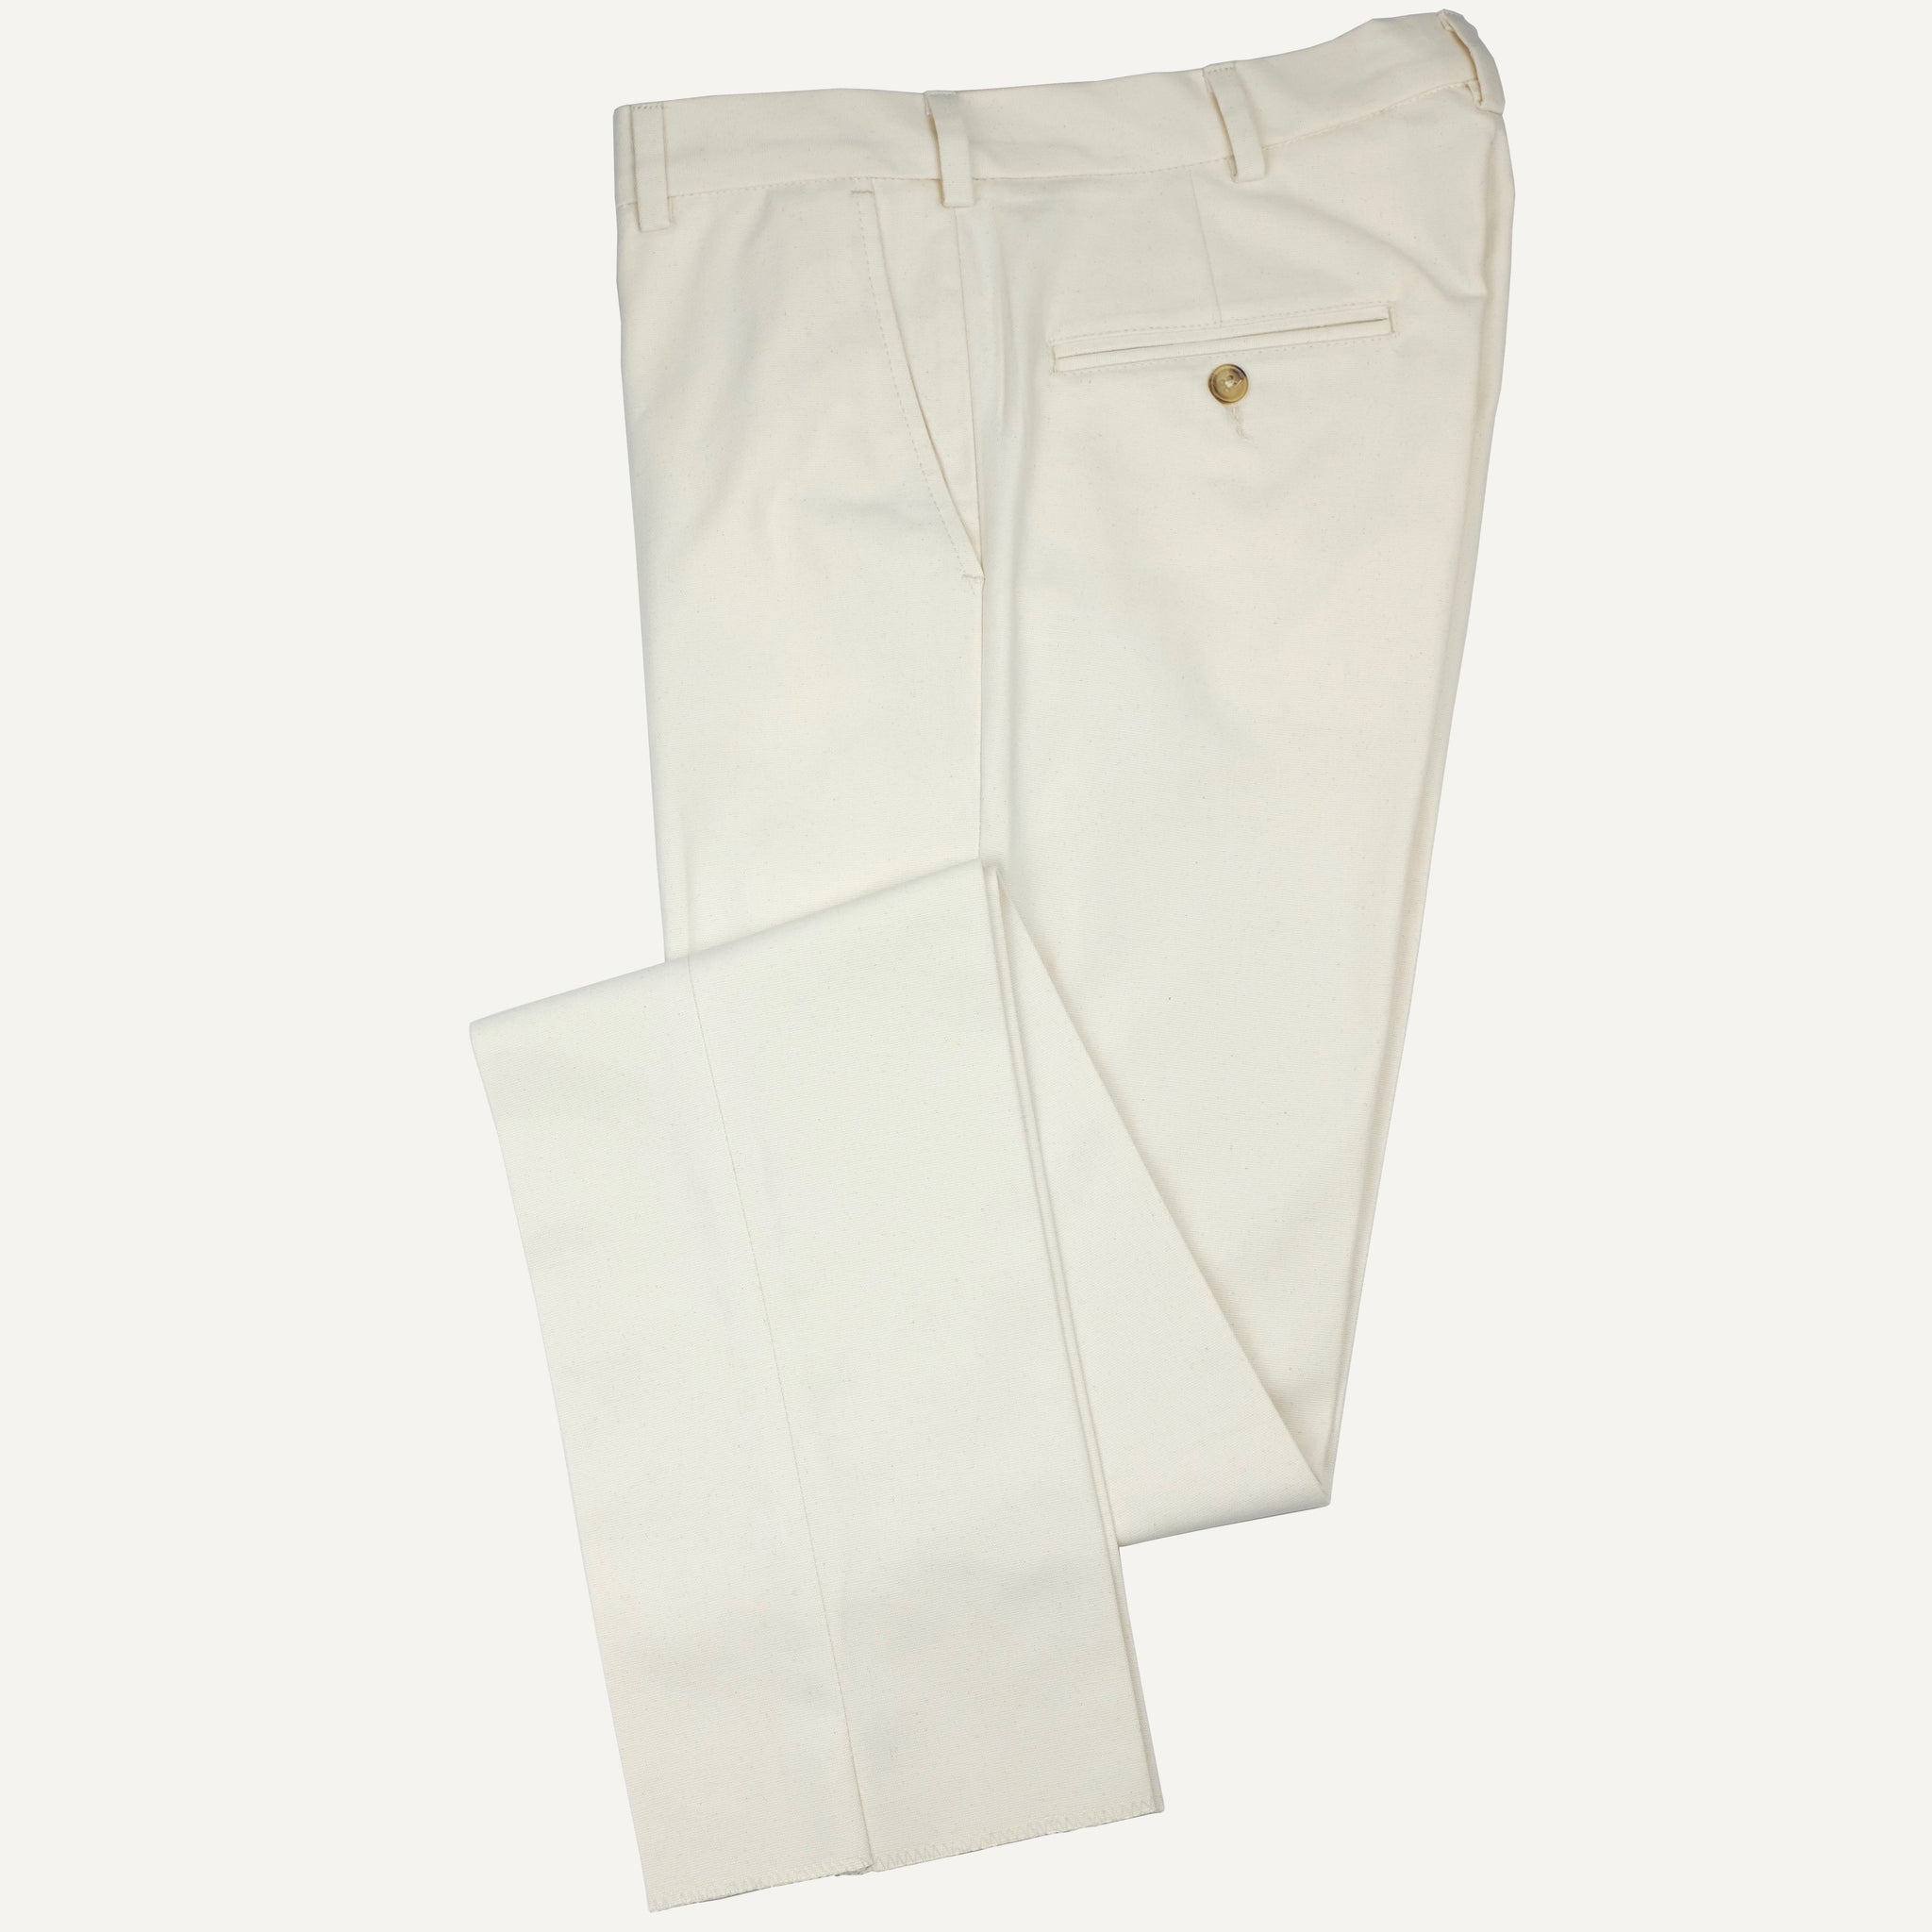 COMME des GARCONS HOMME Cotton Canvas Work Pants (Trousers) Beige S |  PLAYFUL